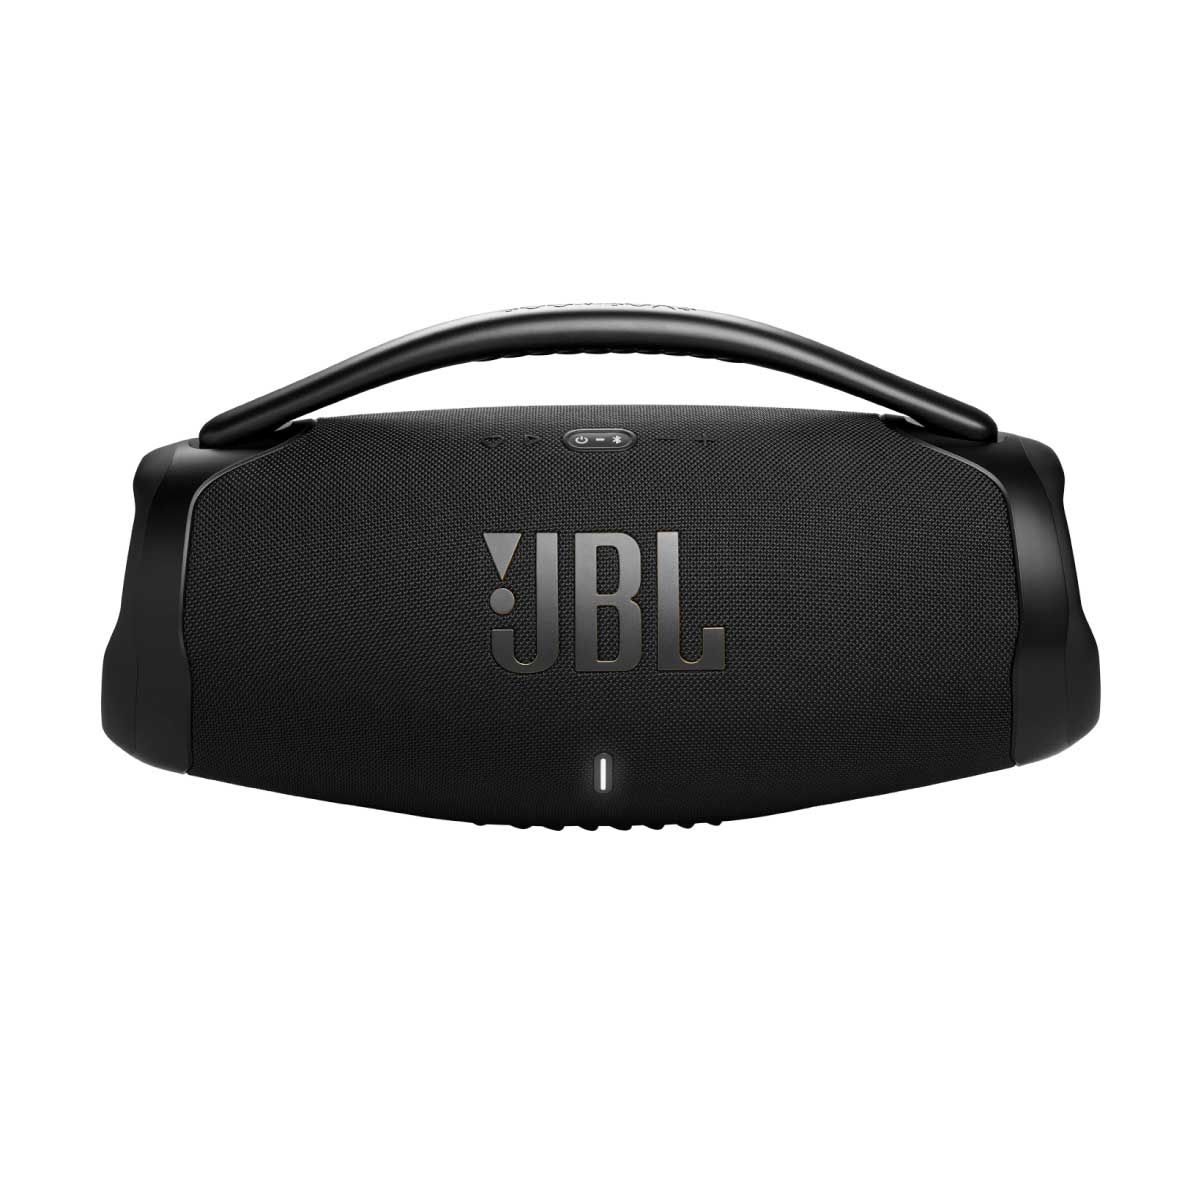 ลำโพงพกพา JBL BOOMBOX 3 WI-FI รุ่น BOOMB3WFBK BLACK พร้อมแบตเตอรี่ 24 ชั่วโมง